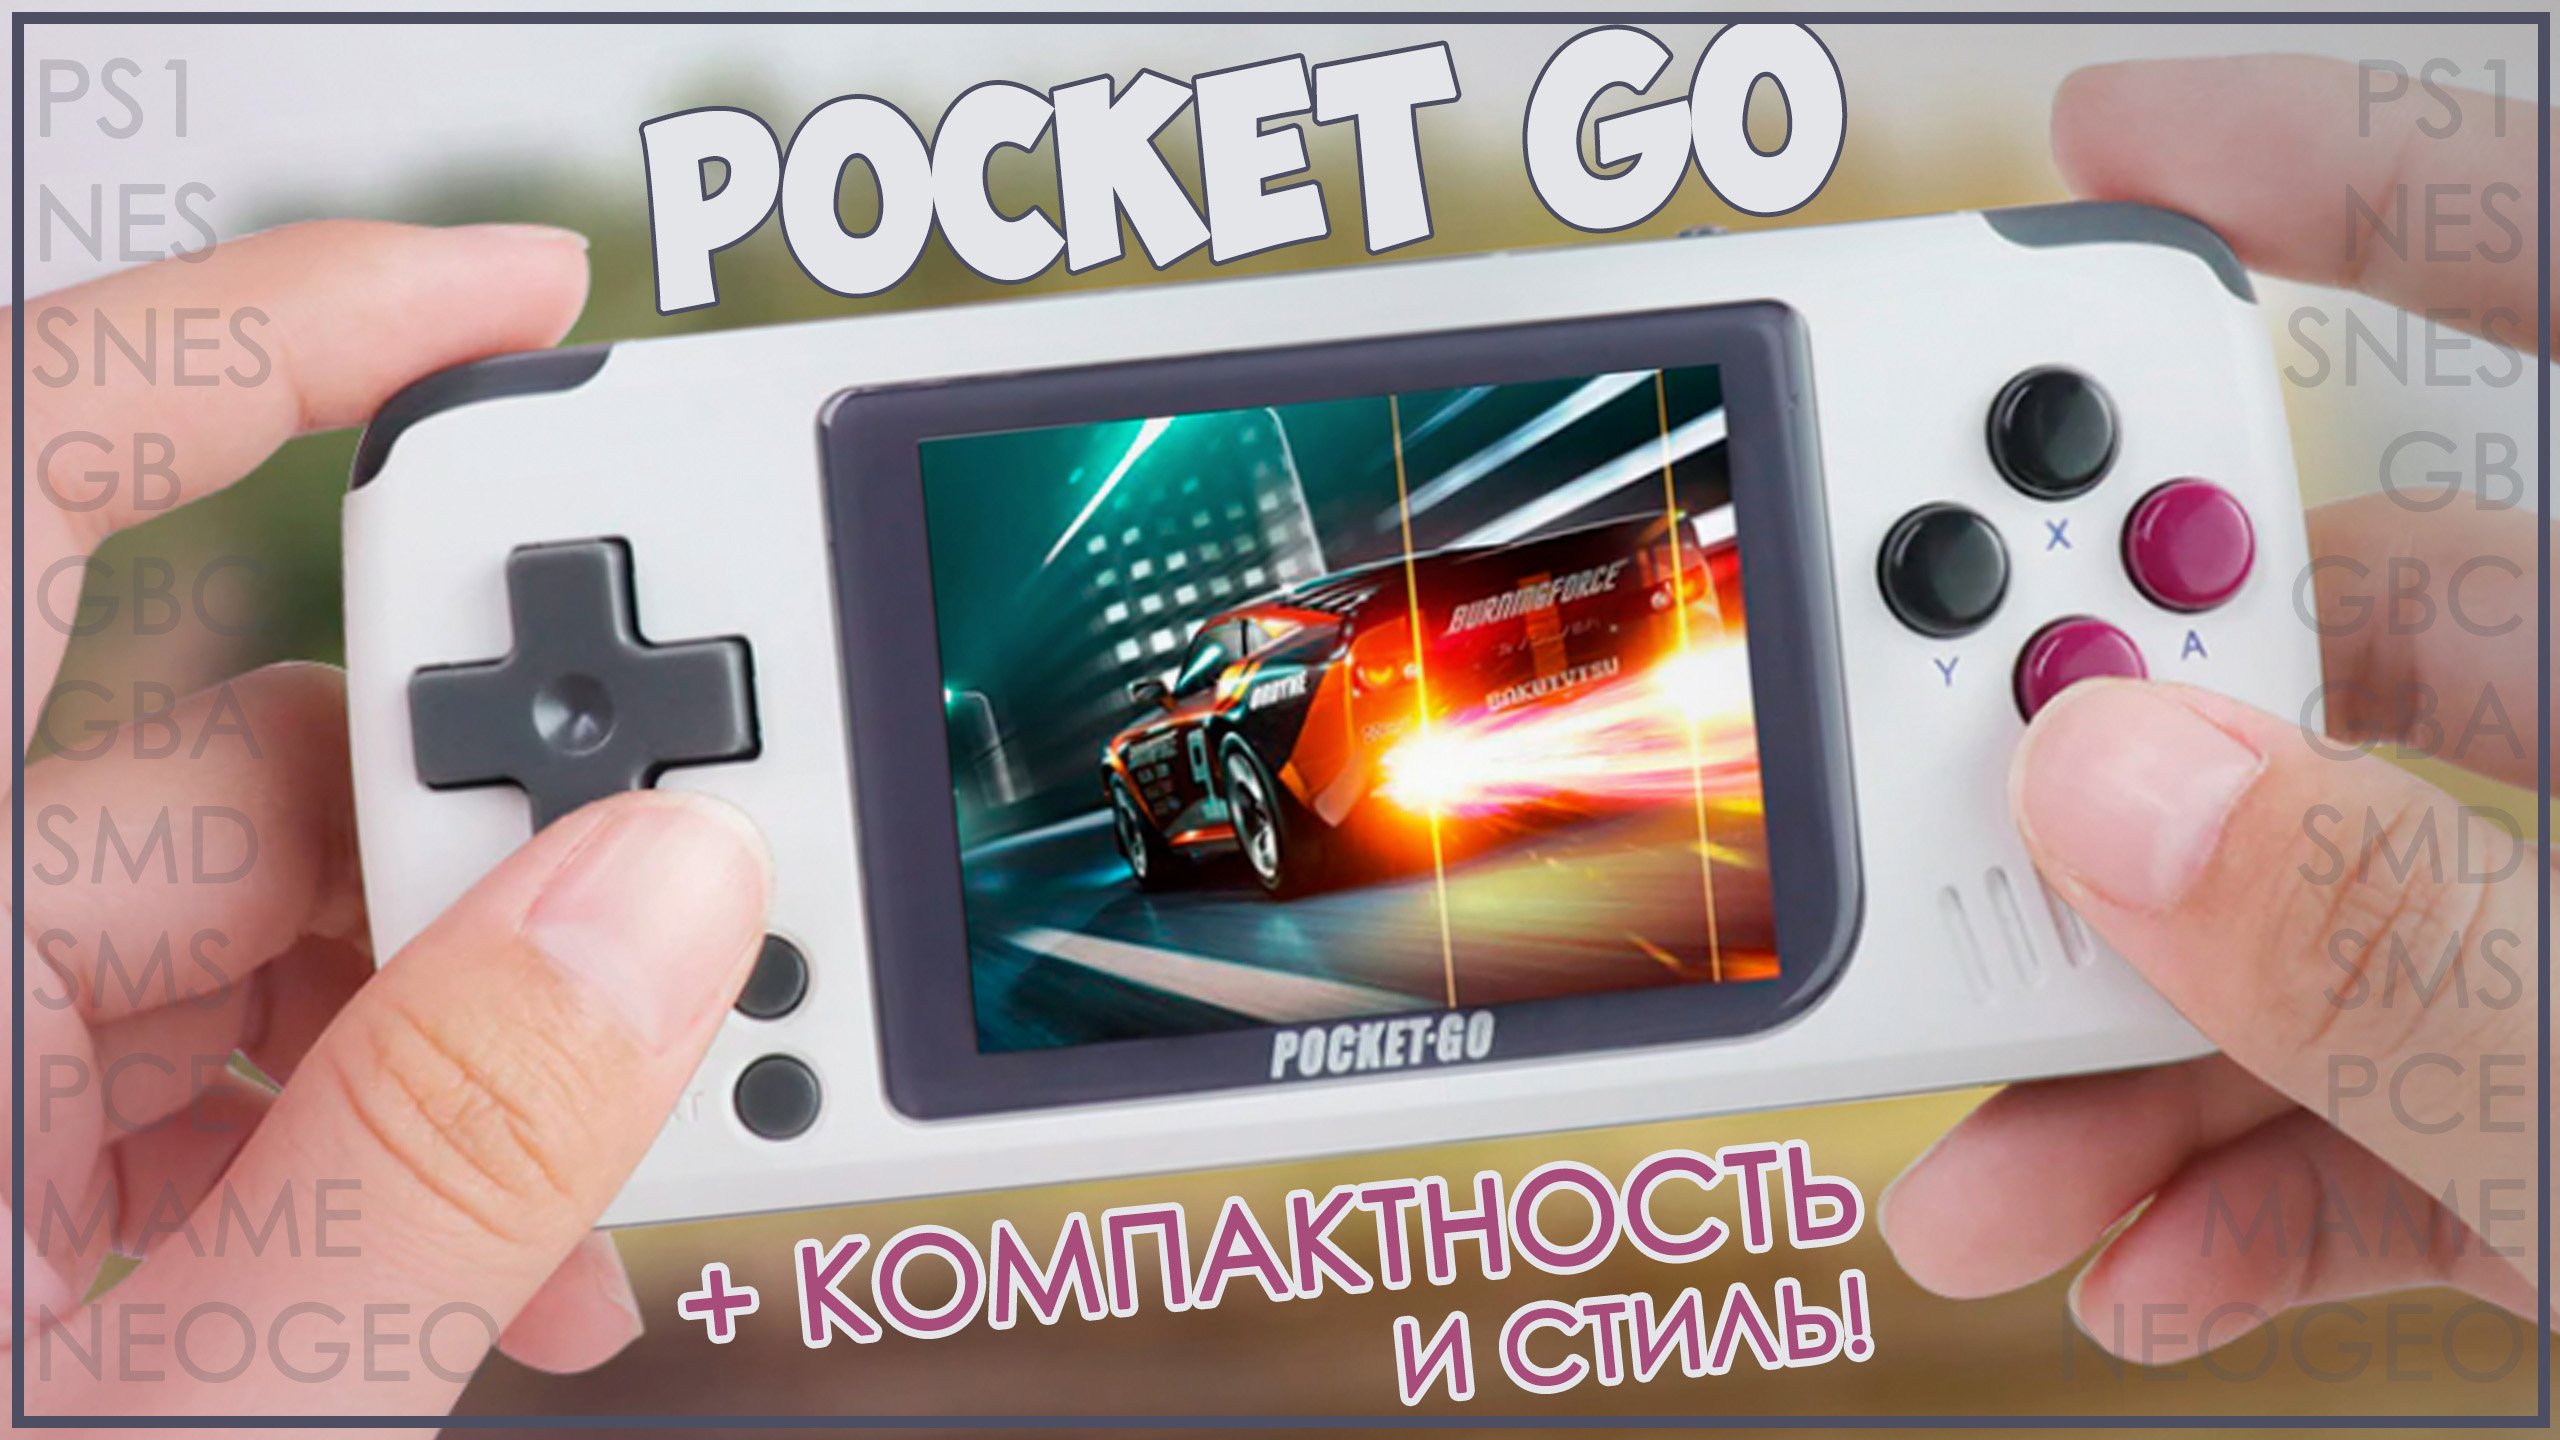 Pocket GO | КОМПАКТНАЯ И ОЧЕНЬ ИНТЕРЕСНАЯ ПОРТАТИВКА! ??